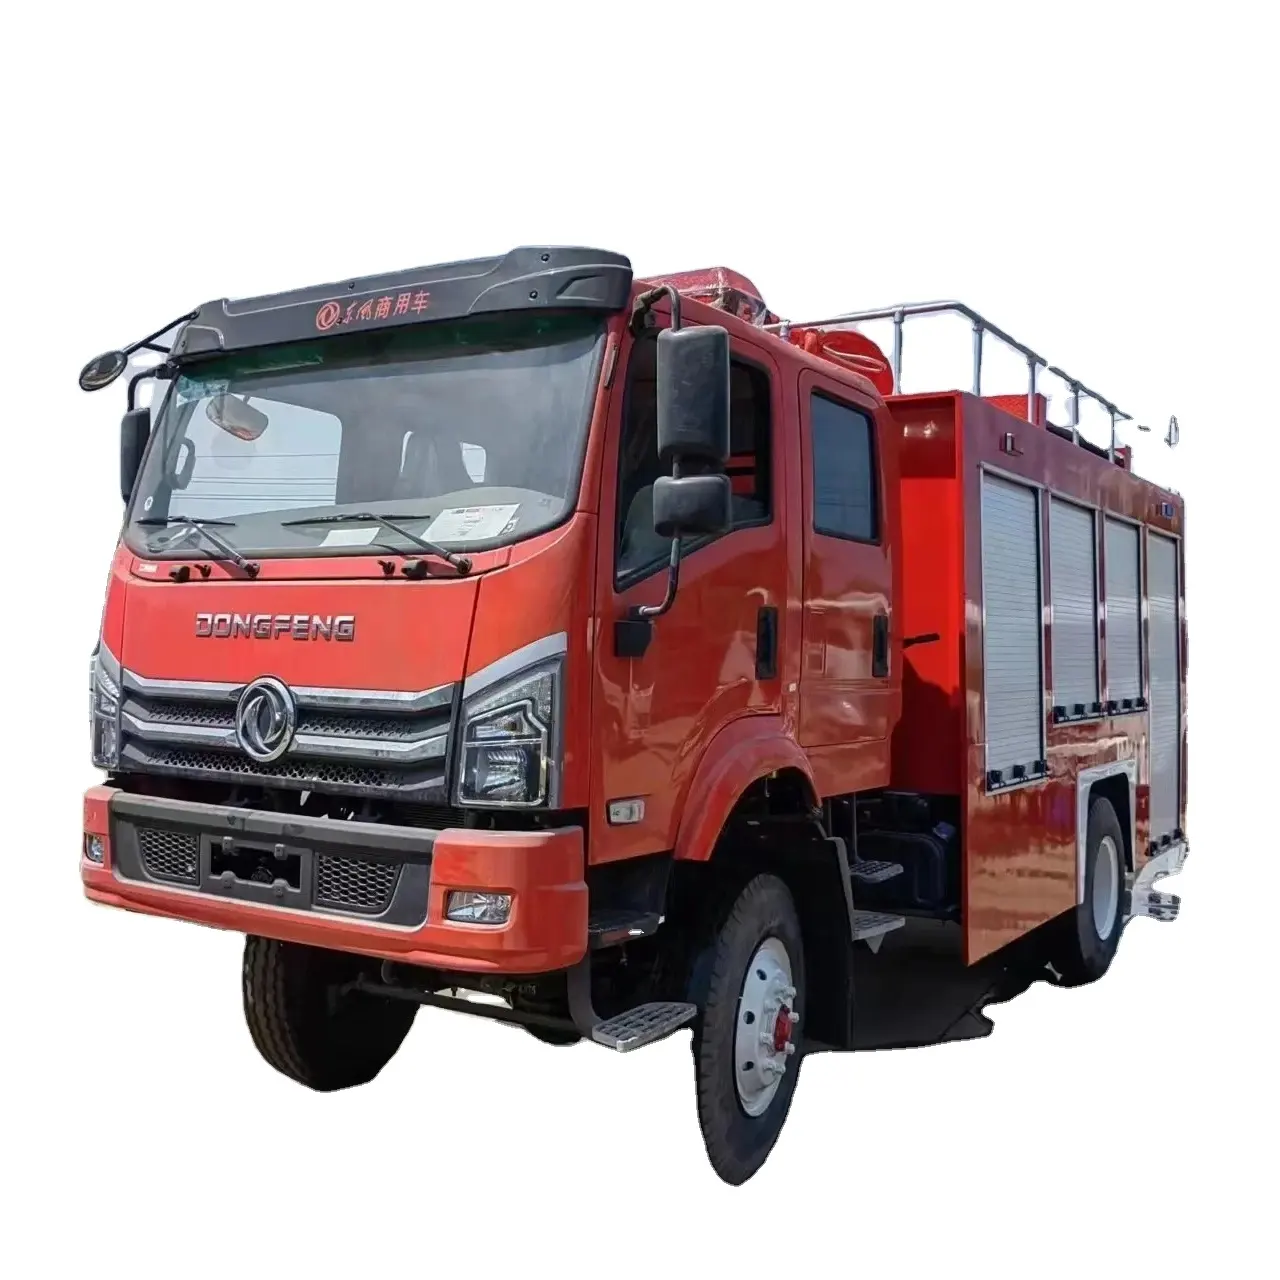 Camión de bomberos Dongfeng Se utiliza principalmente para operaciones de extinción de incendios y misiones de rescate de emergencia